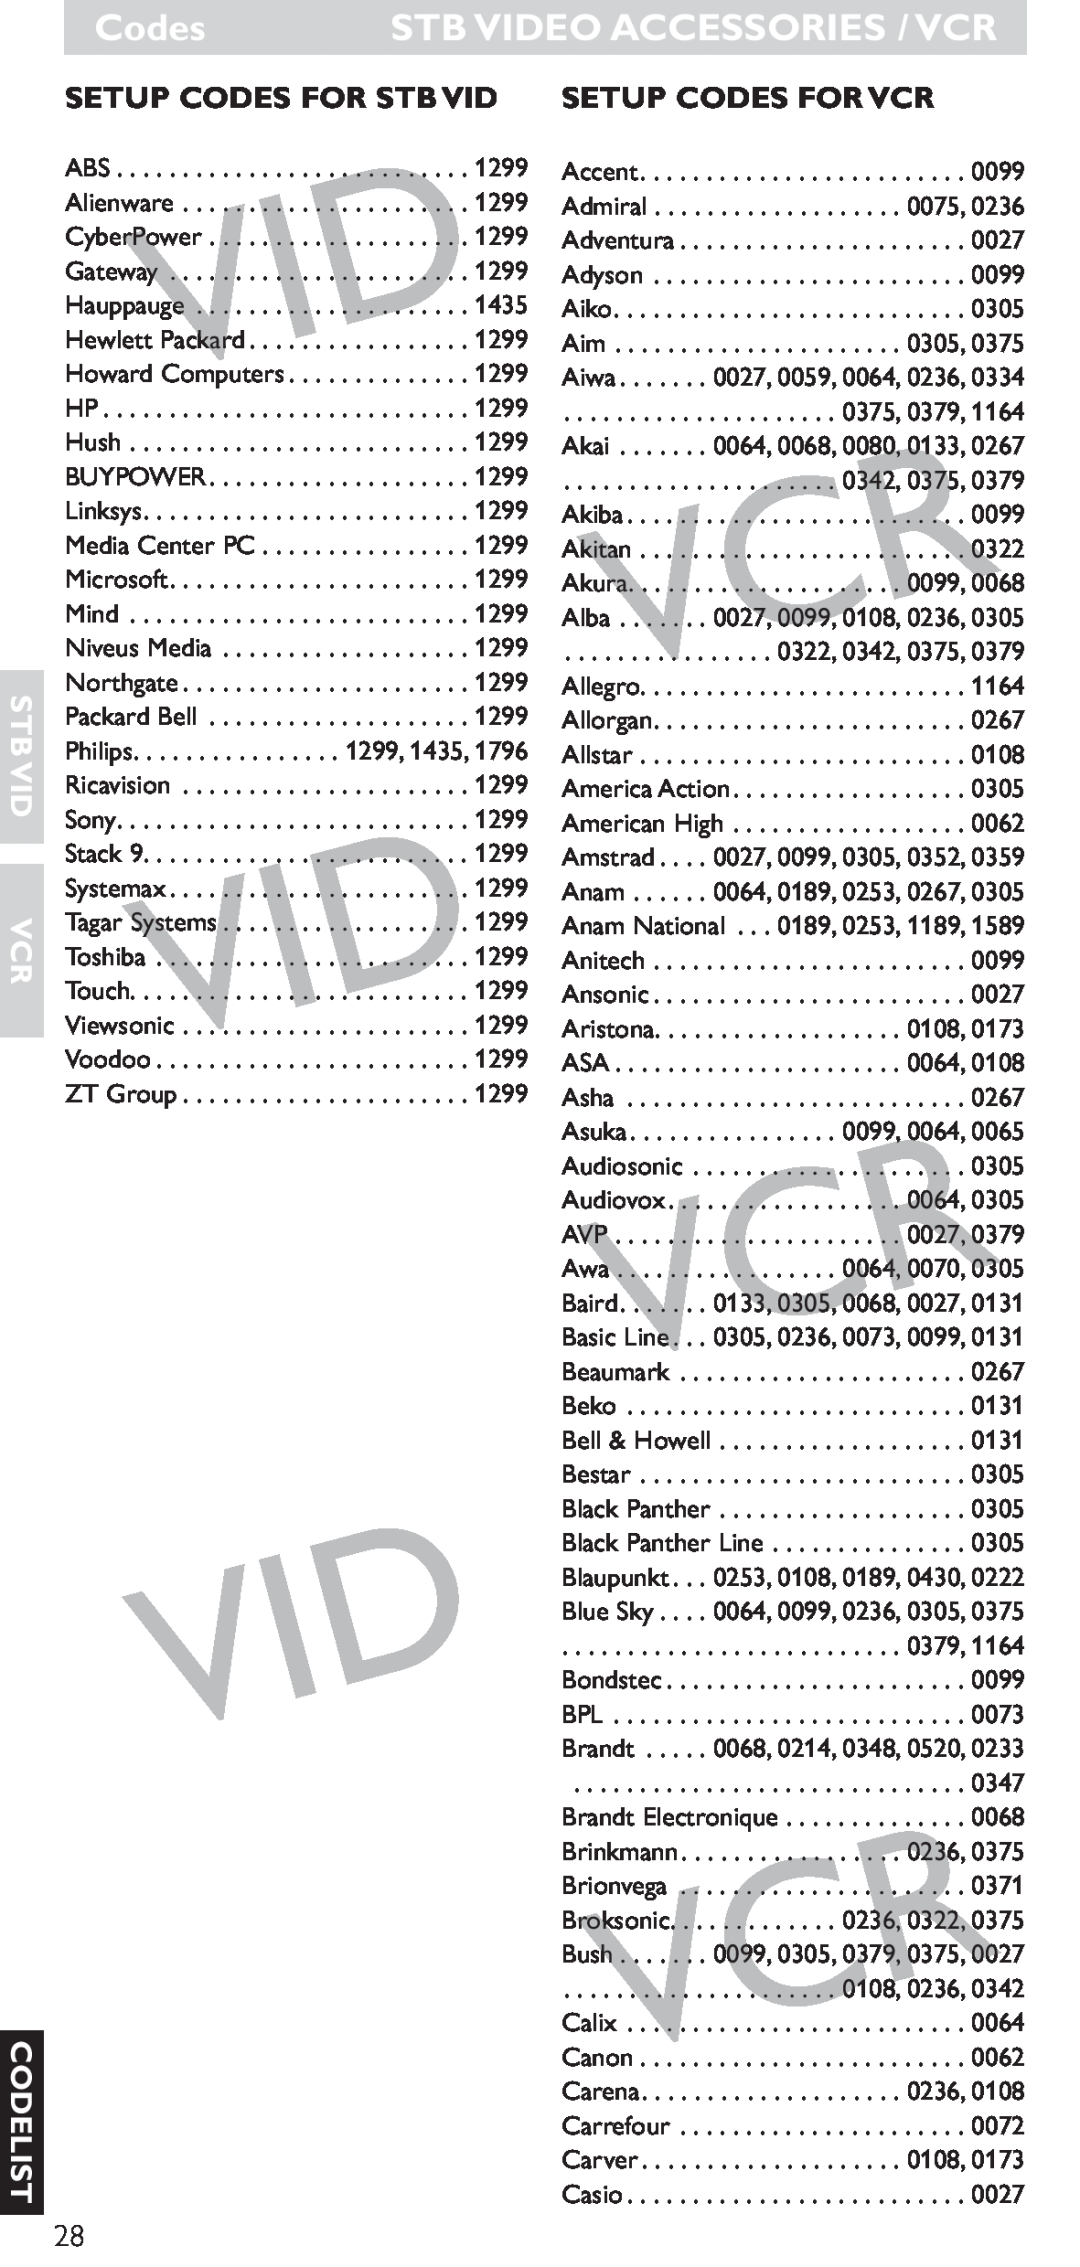 Hitachi SRU 5040/05 Codes STB VIDEO ACCESSORIES / VCR, Setup Codes For Stb Vid Setup Codes For Vcr, Stb Vid Vcr Codelist 